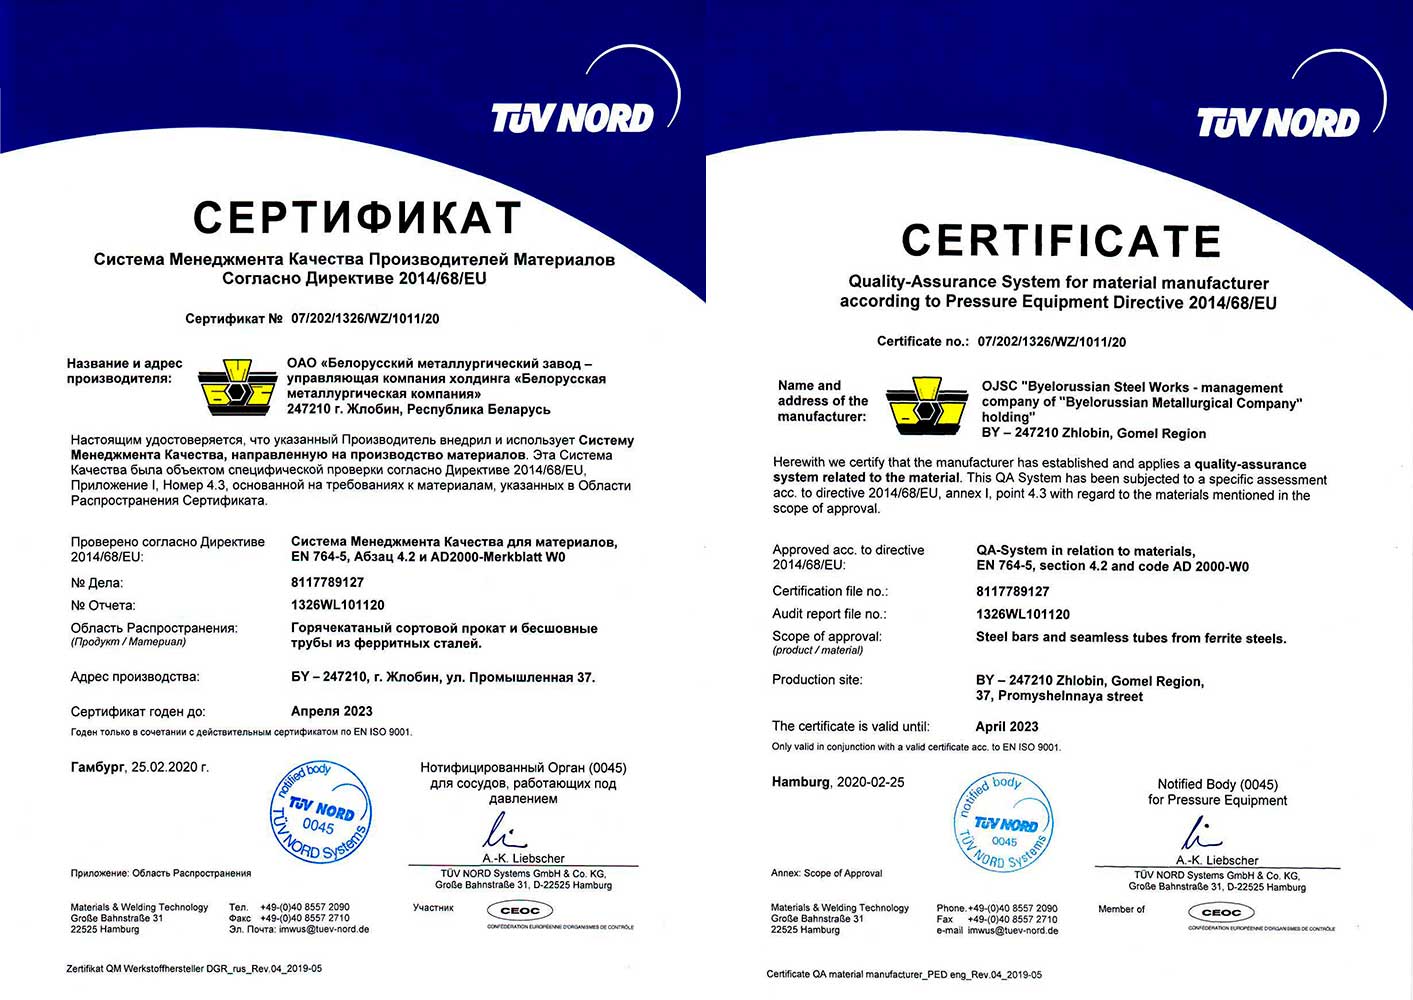 Сертификат № 07/202/1326/WZ/1011/20 (TUV NORD Systems, Германия) соответствия СМК требованиям AD 2000 Merkblatt W0 и Директиве 2014/68/EU на производство горячекатаного сортового проката и бесшовных труб из ферритных материалов.